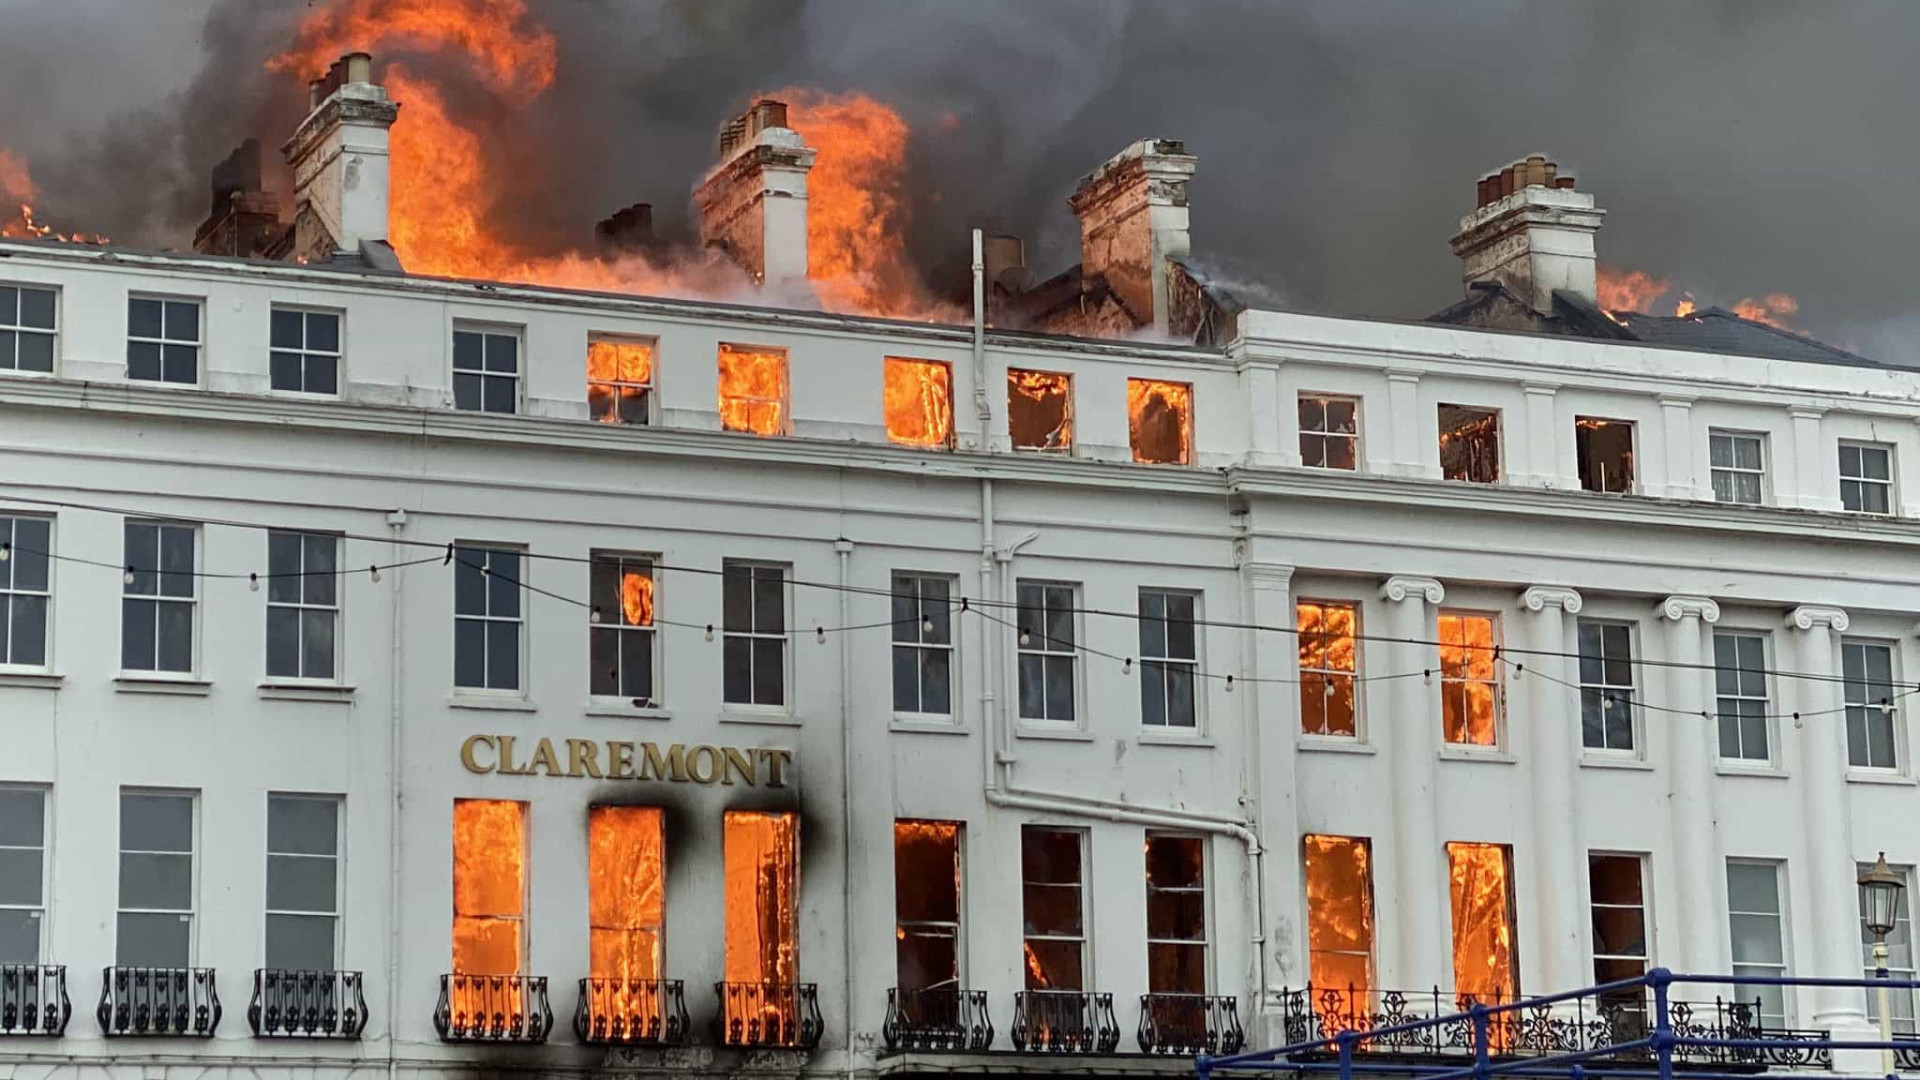 Hotel histórico destruído por incêndio no Reino Unido